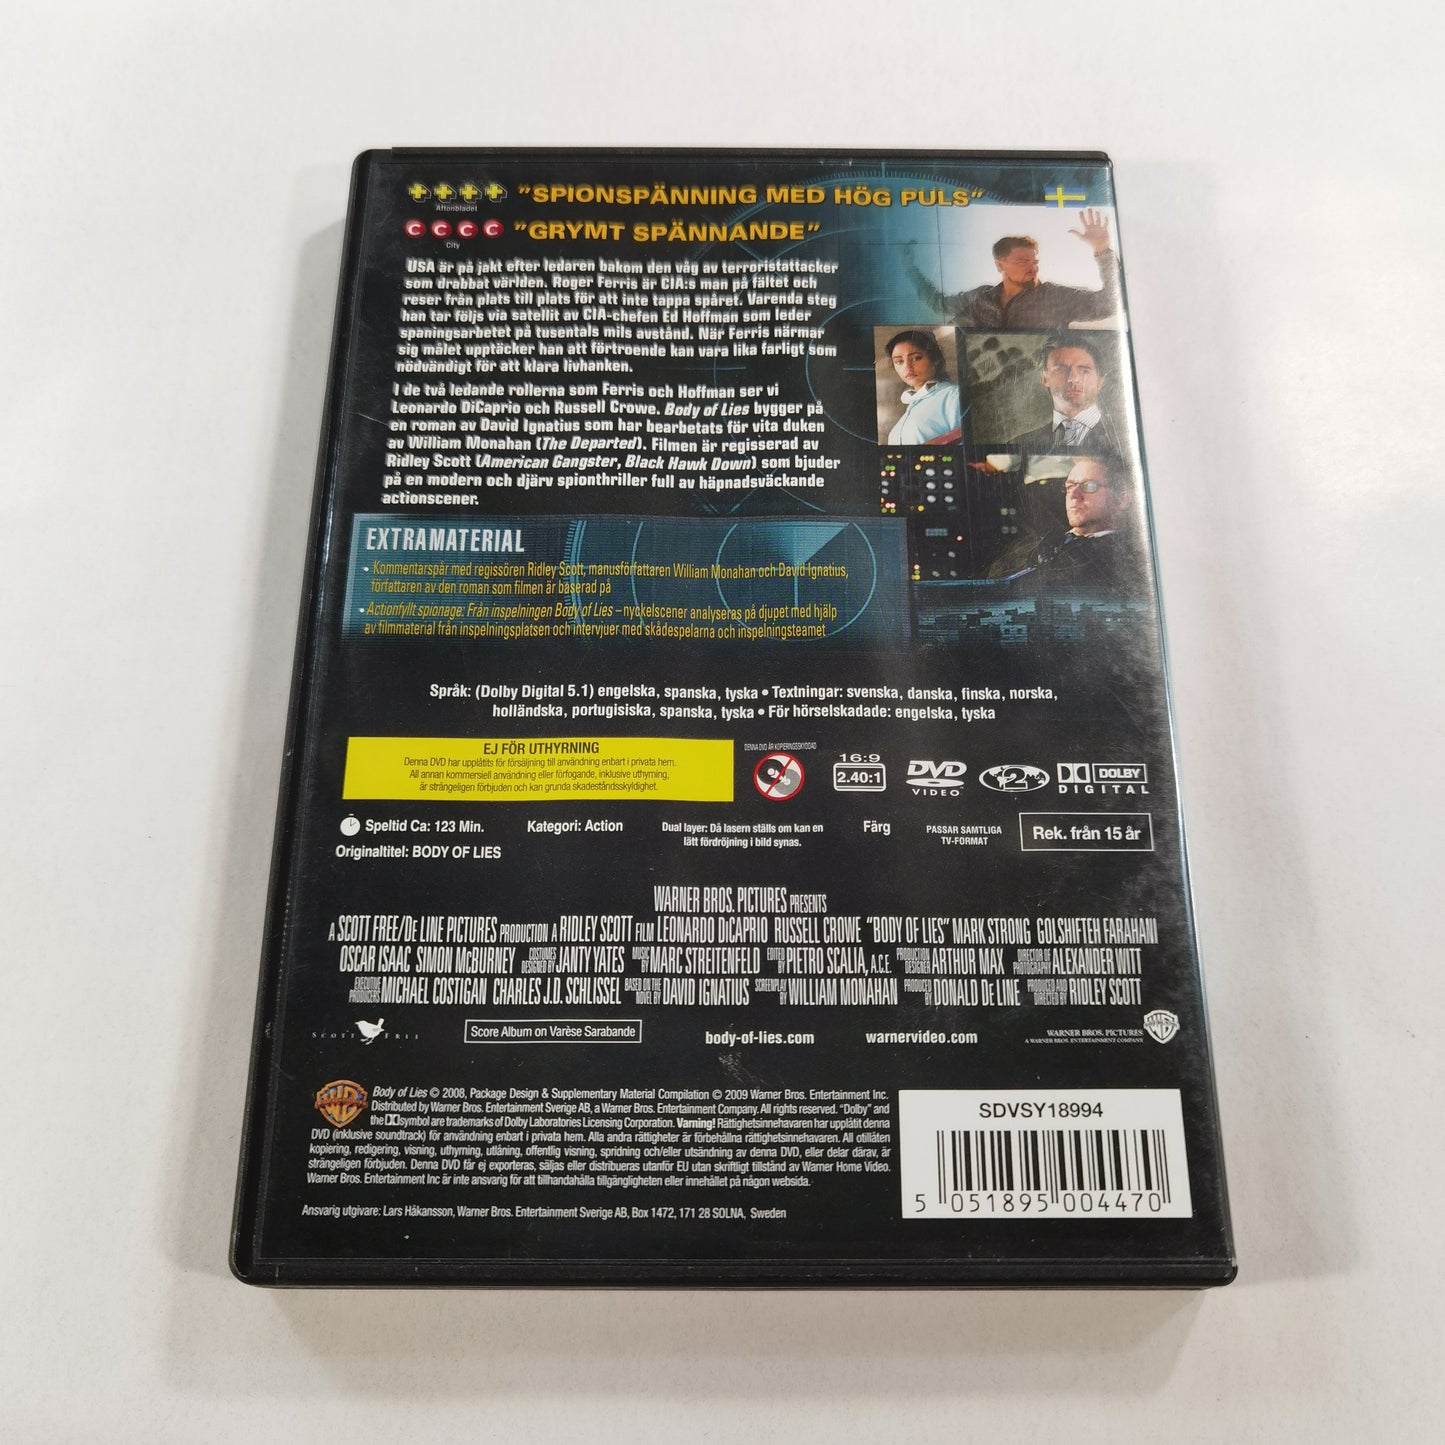 Body of Lies (2008) - DVD SE 2009